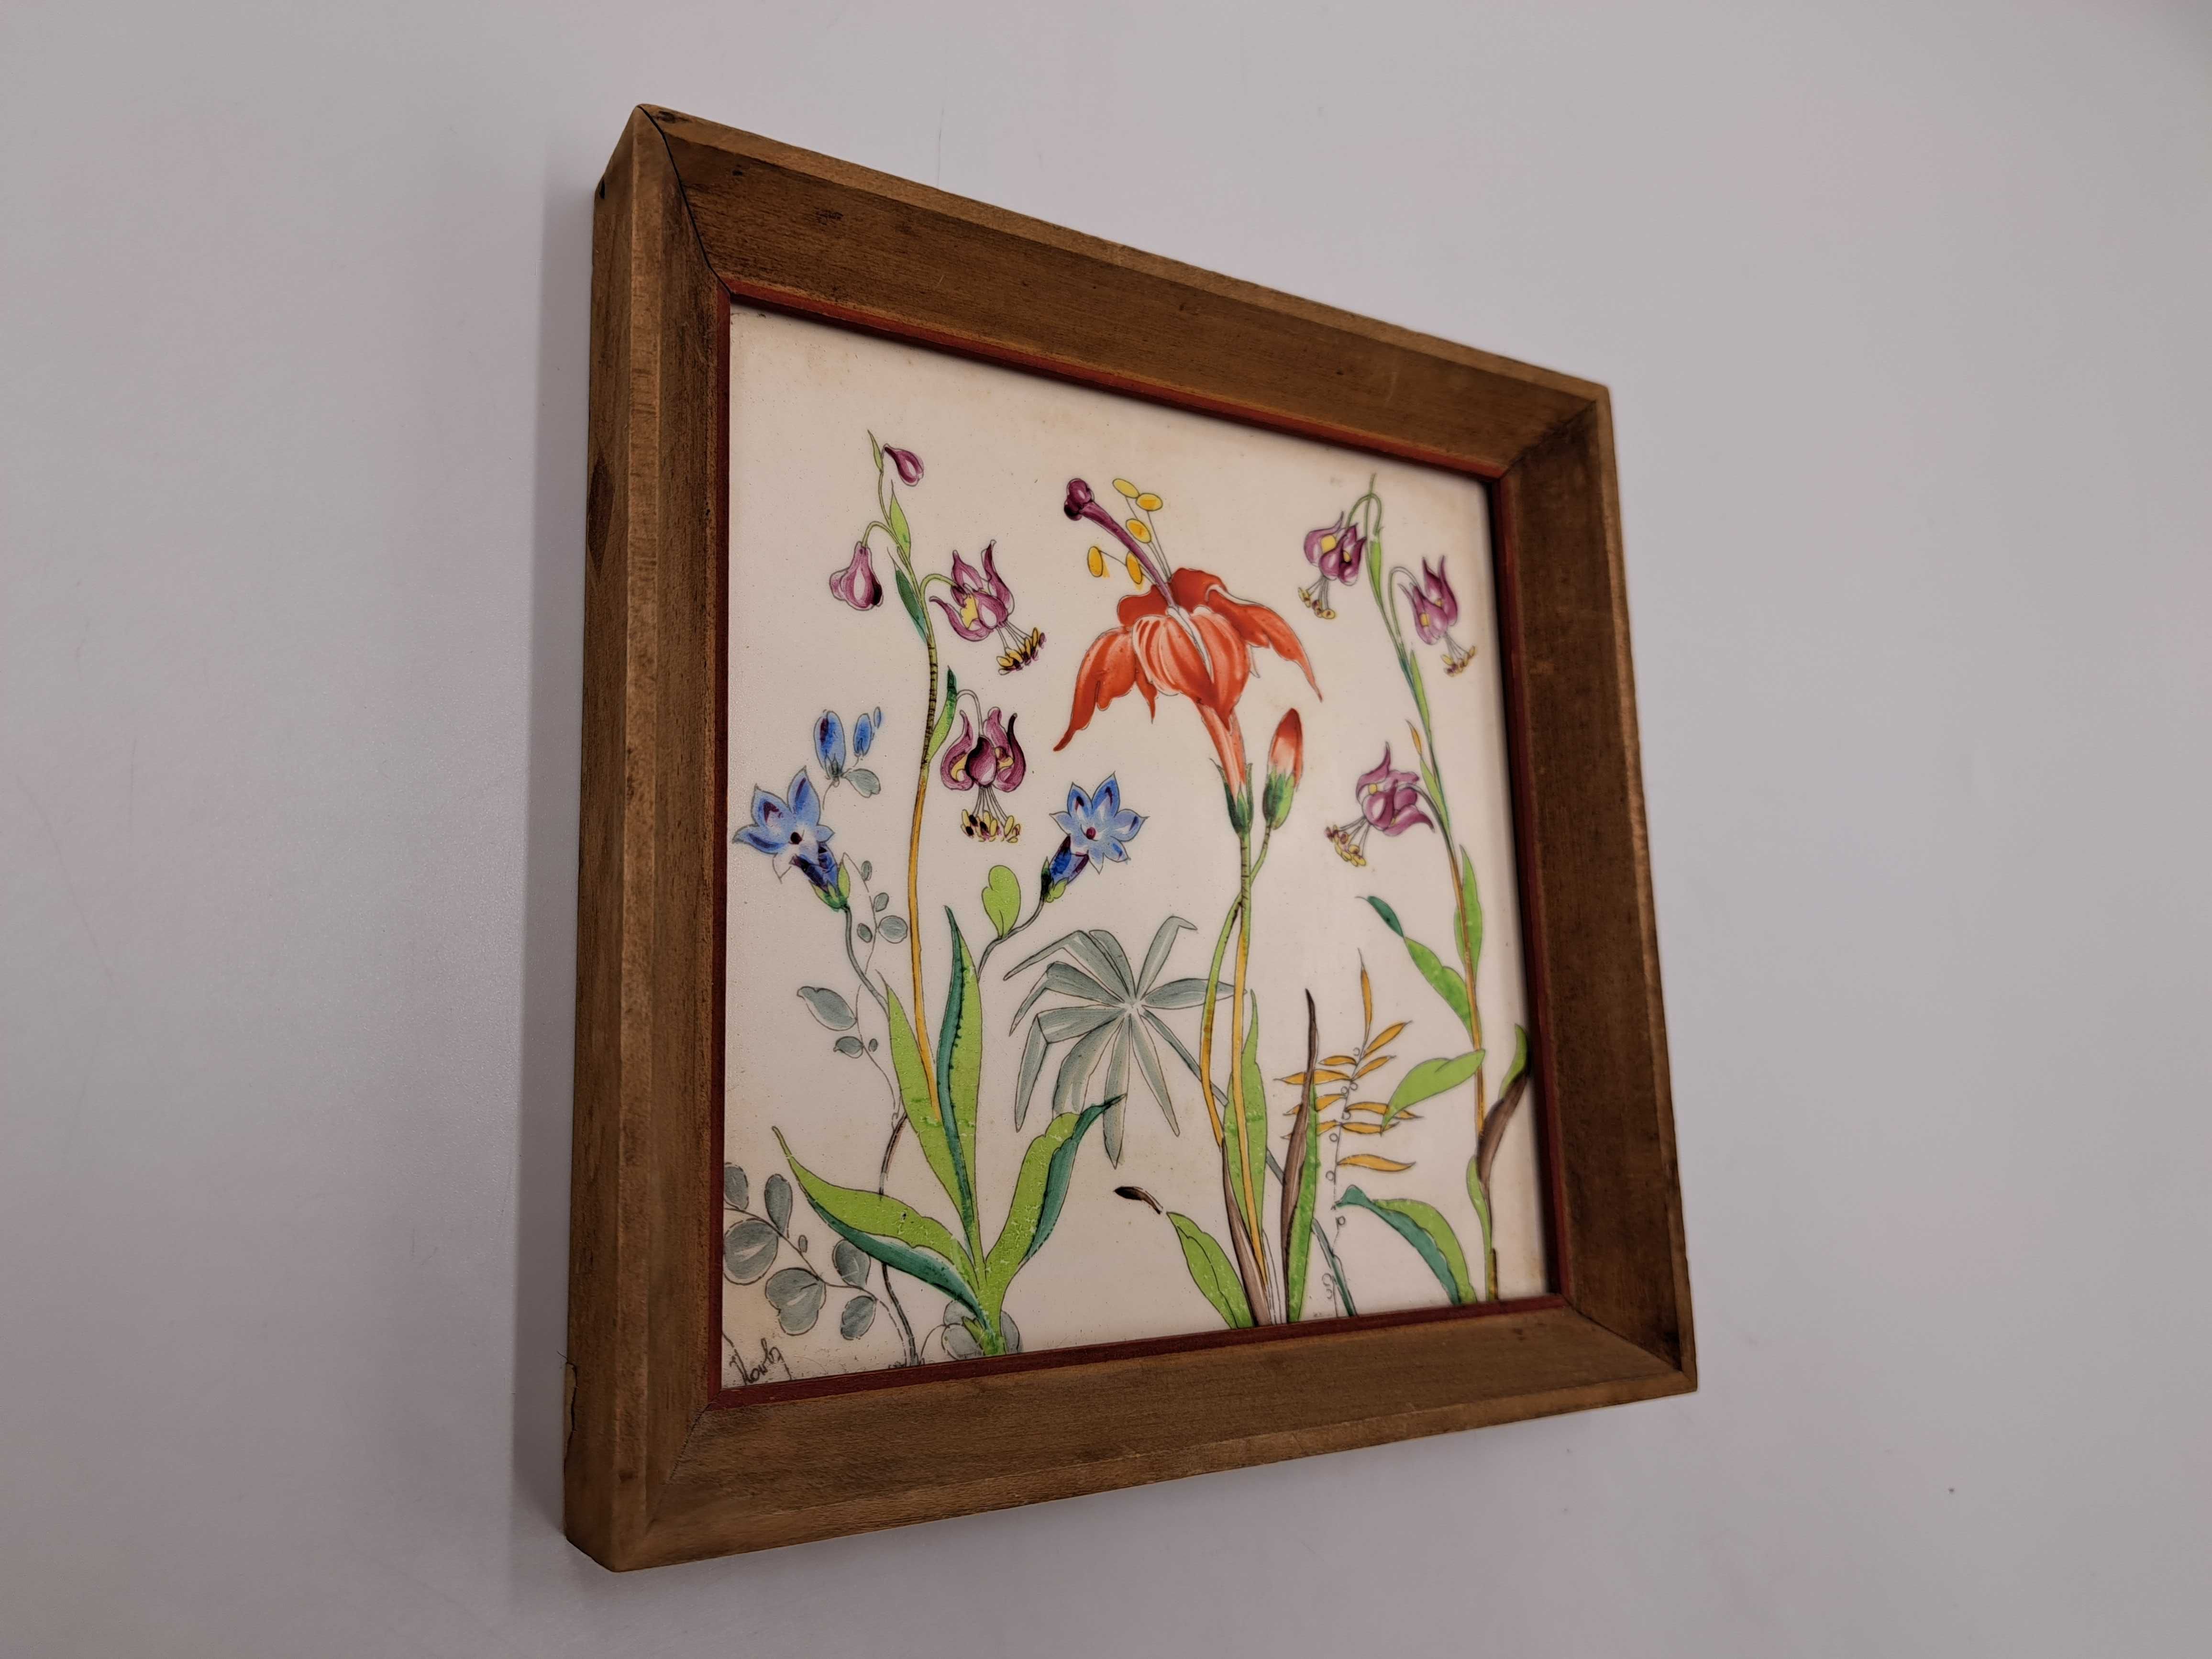 Płytka ceramiczna fliza Rako w ramce drewnianej obraz kwiaty malowany